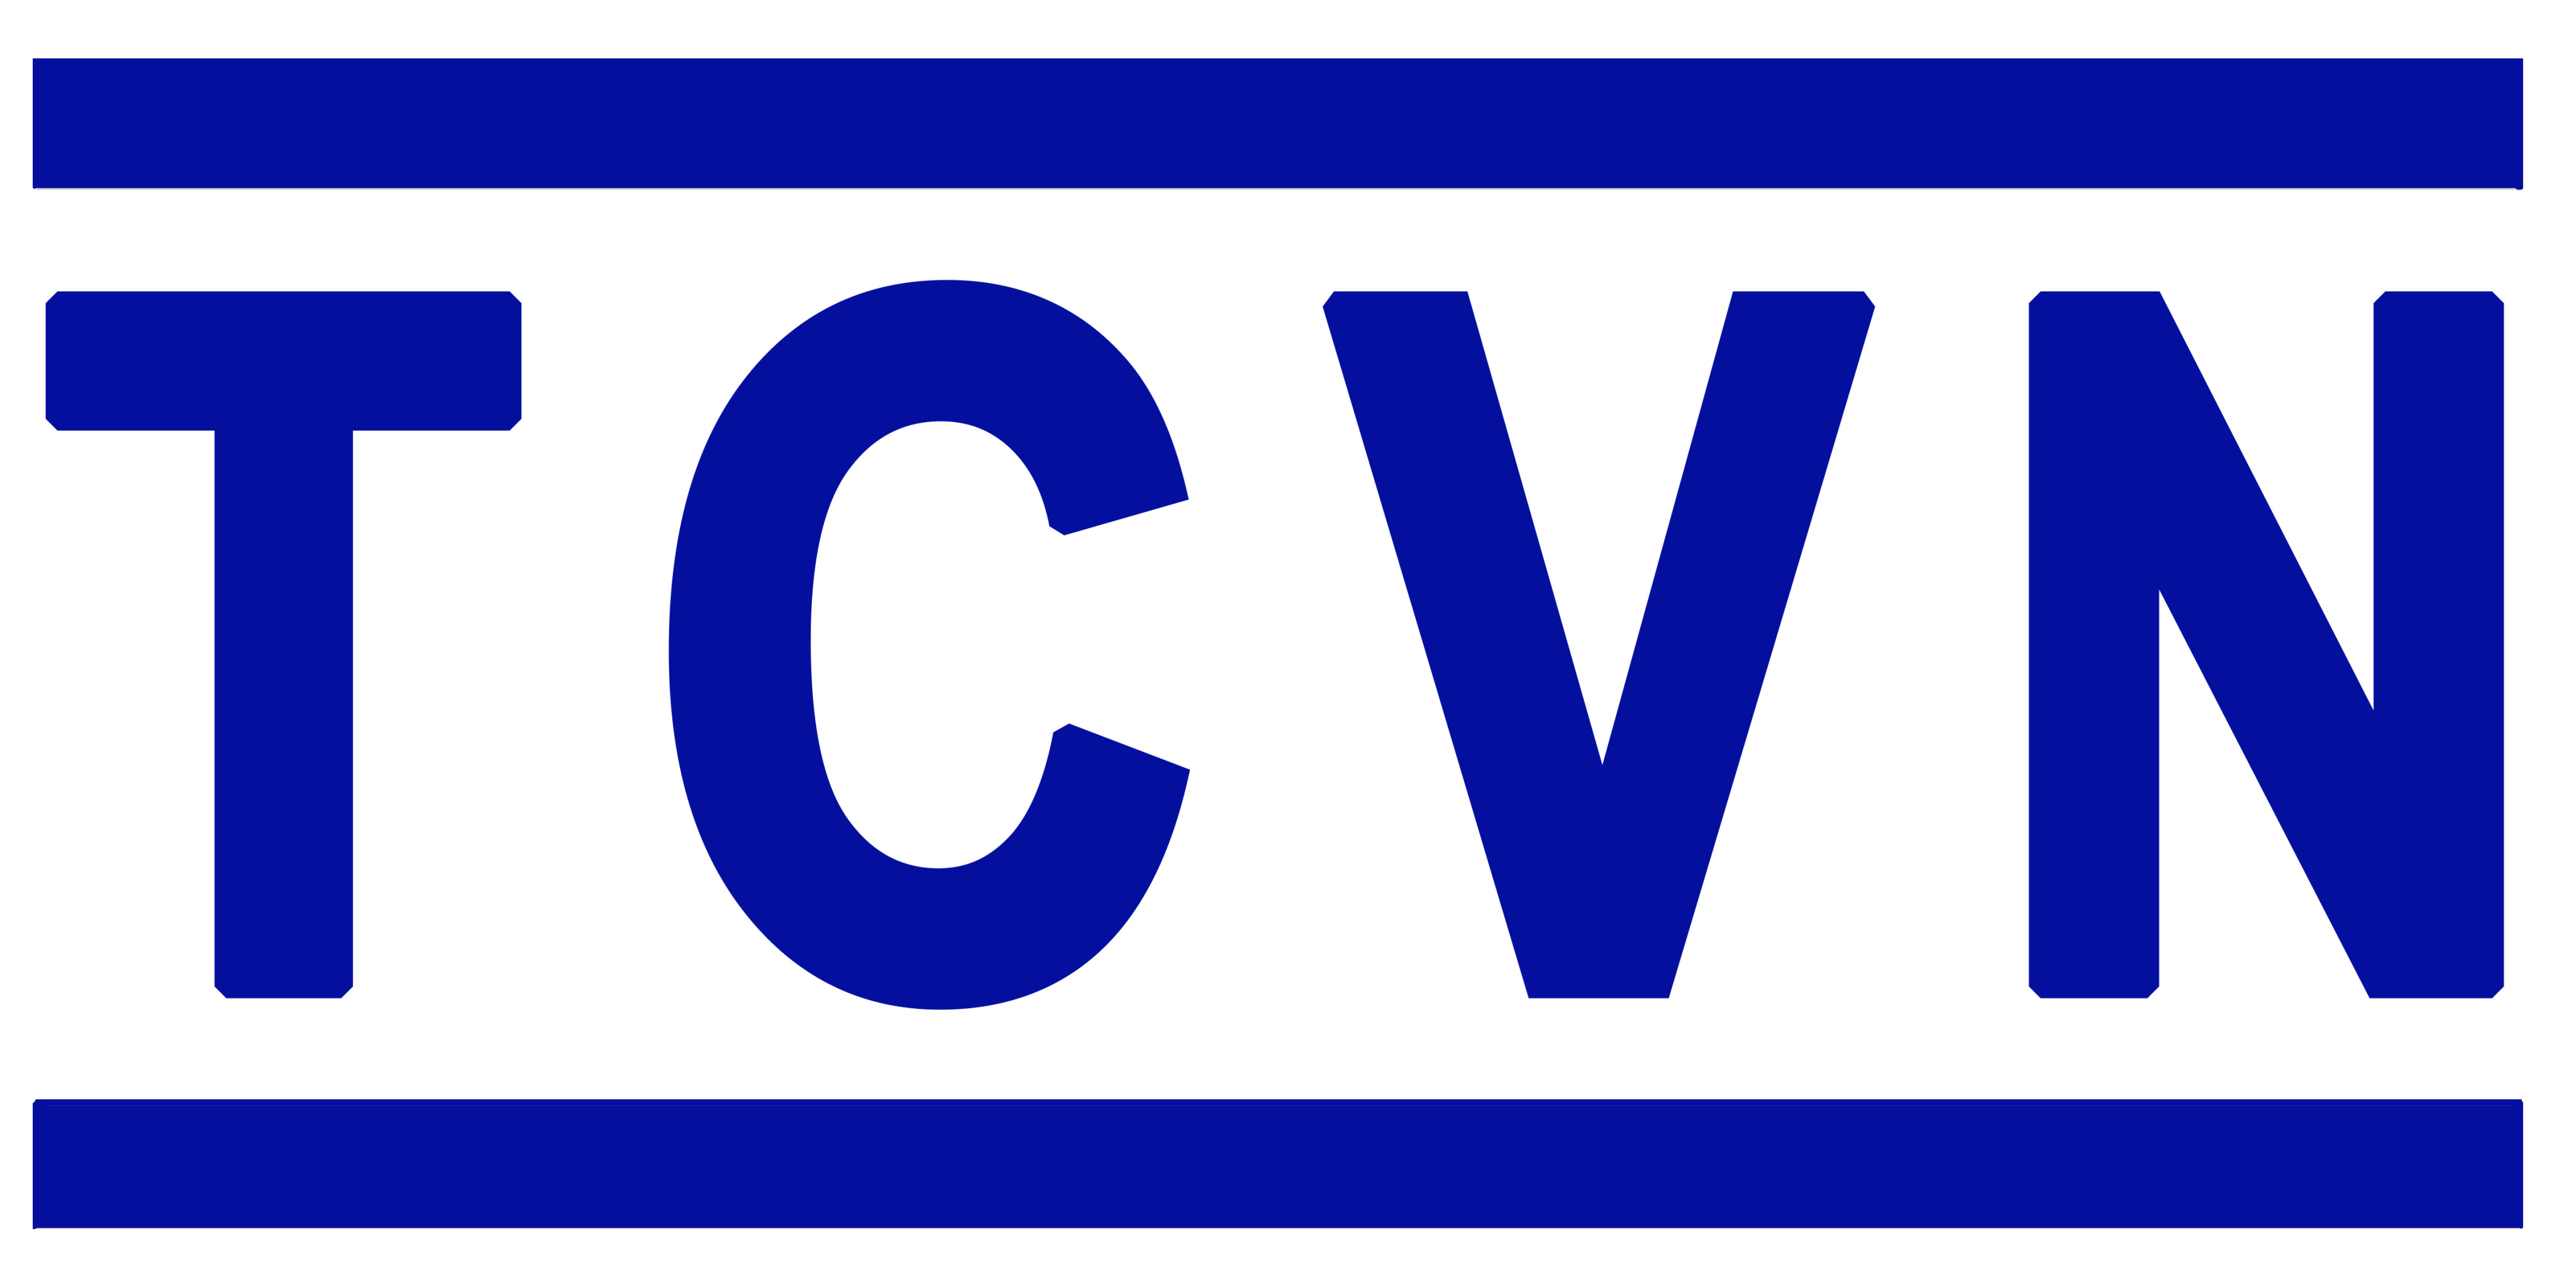 Danh mục tiêu chuẩn Quốc Gia (TCVN) công bố tháng 5 năm 2020